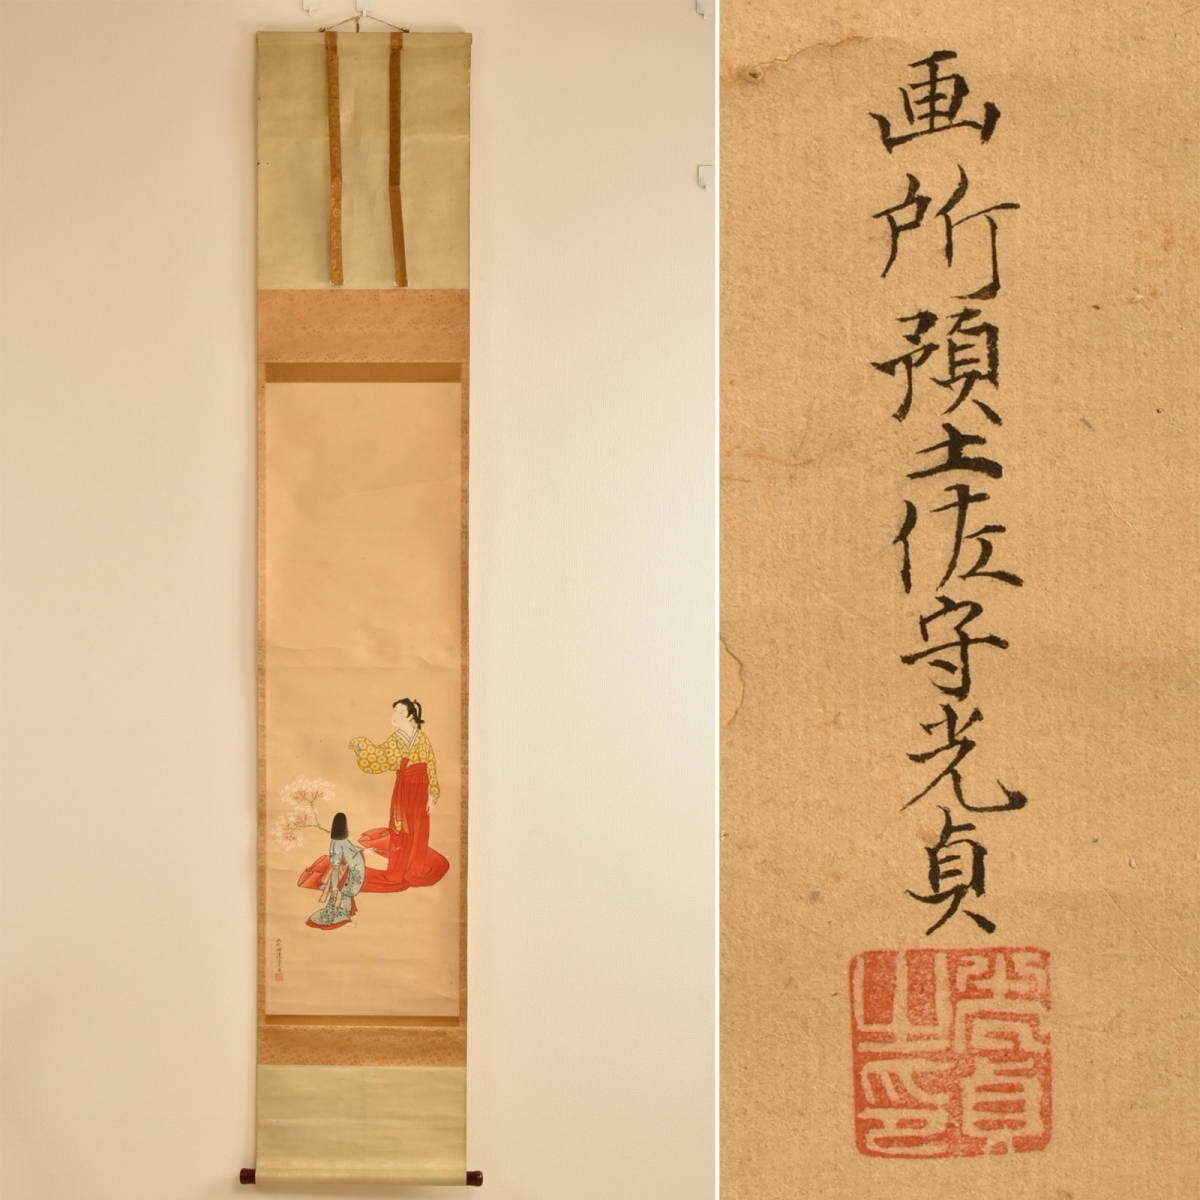 C10376 Tosa Mitsusada, portrait d'une belle femme, parchemin suspendu, garanti authentique, Peinture, Peinture japonaise, personne, Bodhisattva